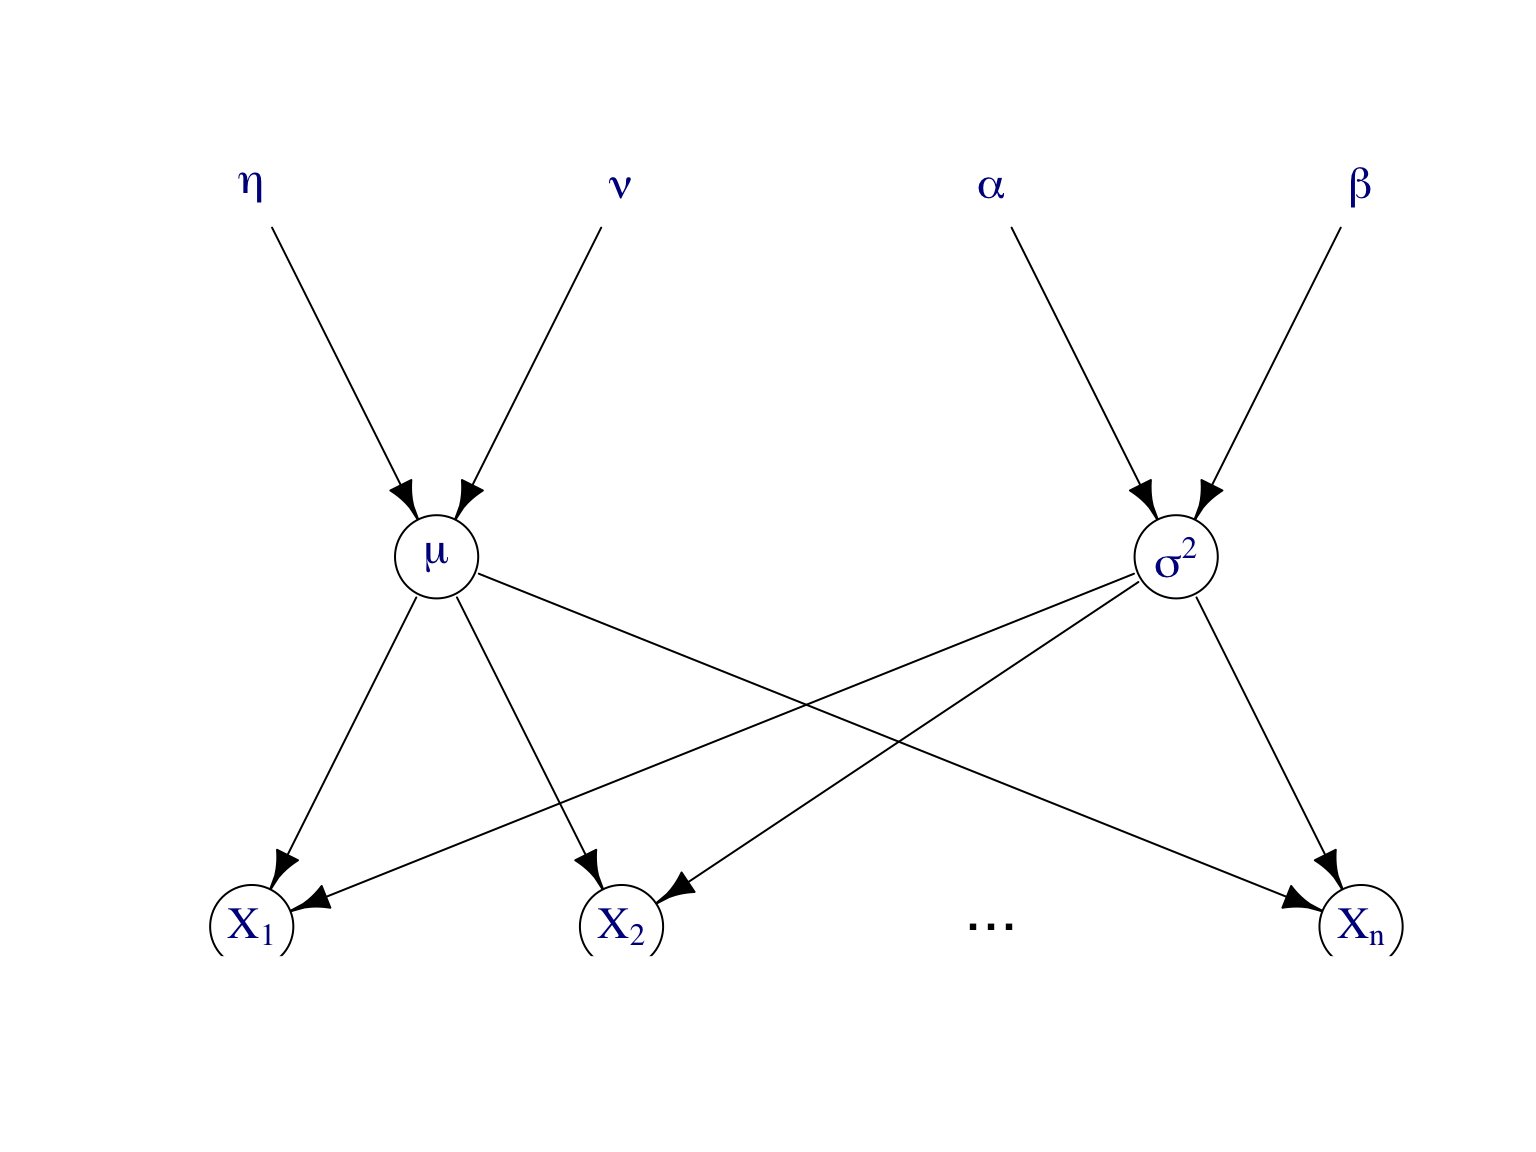 Modèle graphique dirigé pour représenter le modèle bayésien de l’exemple.